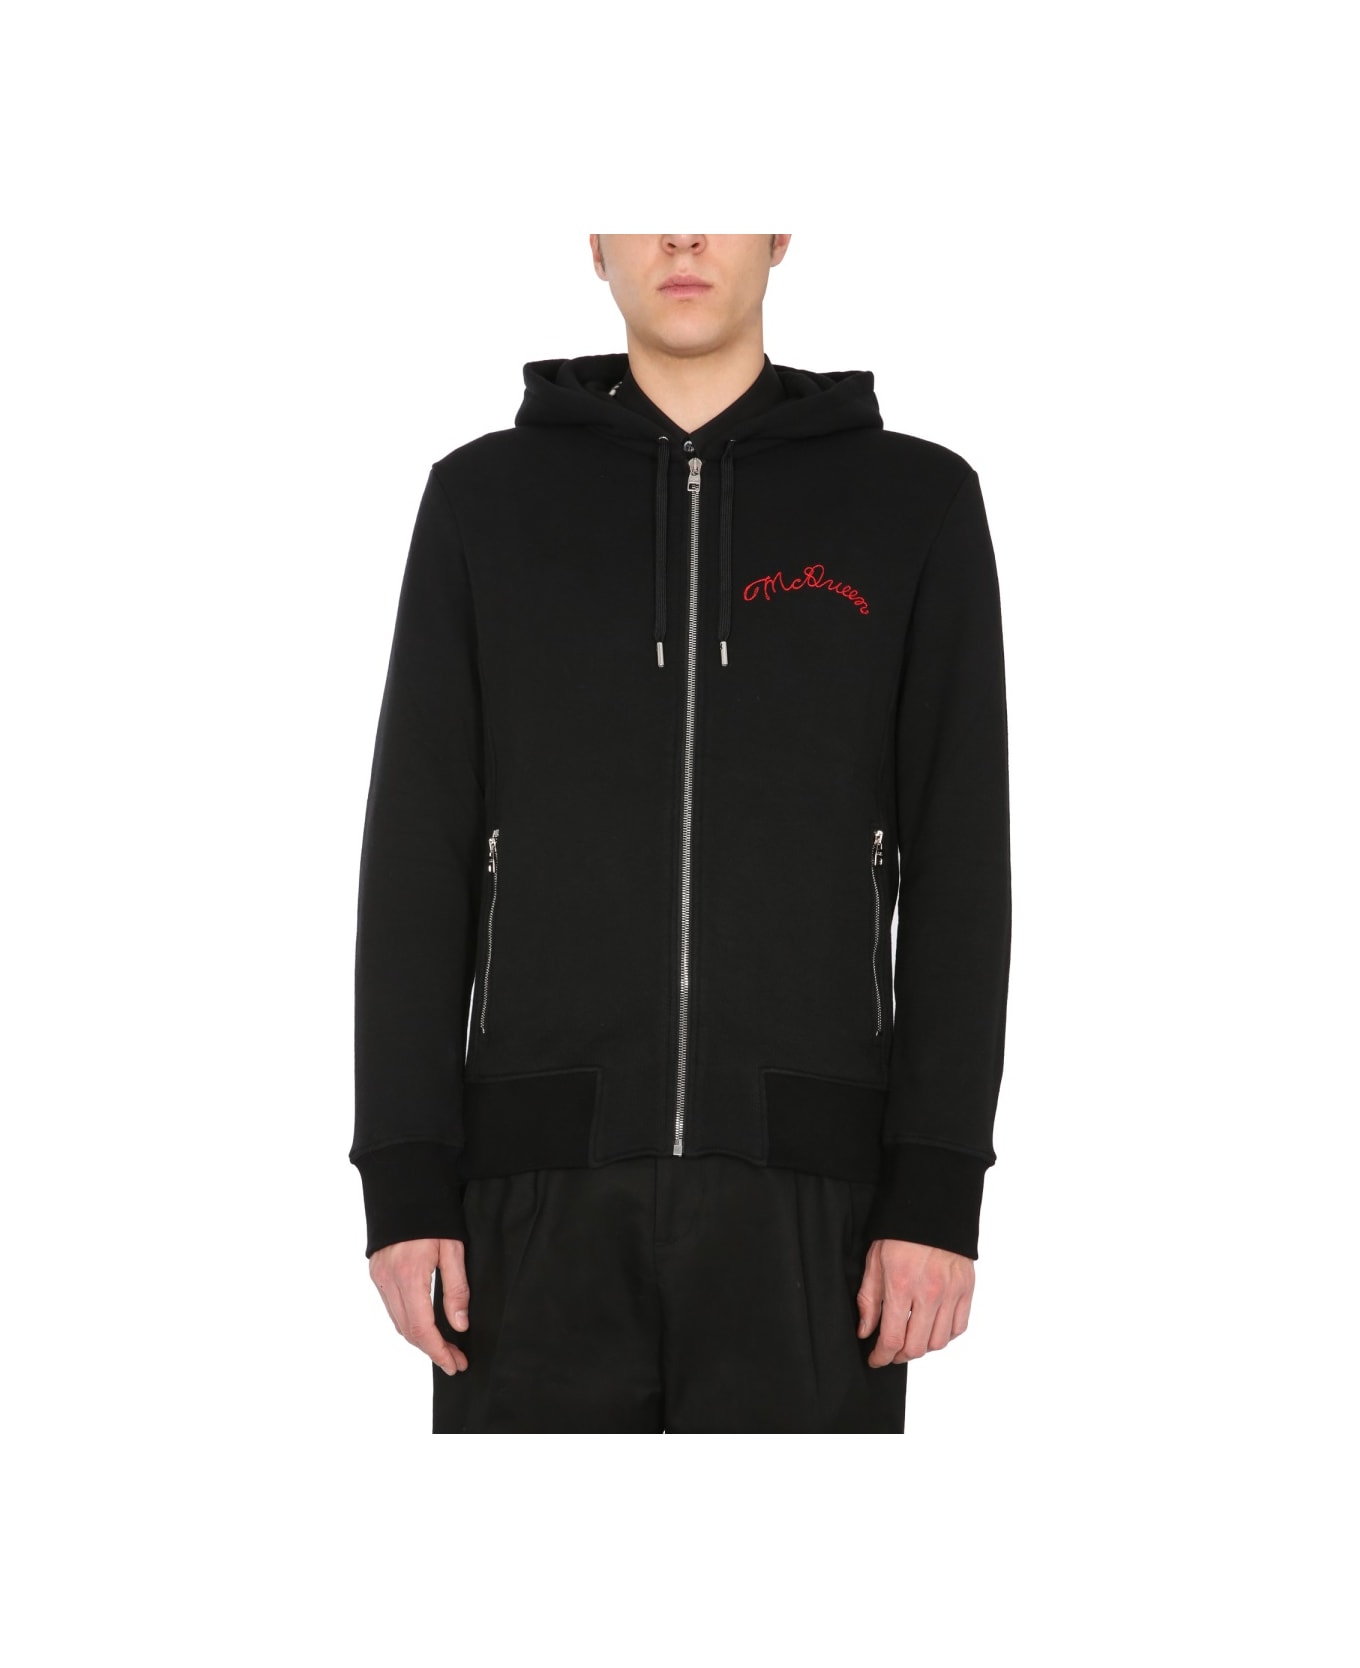 Alexander McQueen Hooded Sweatshirt With Zip - BLACK